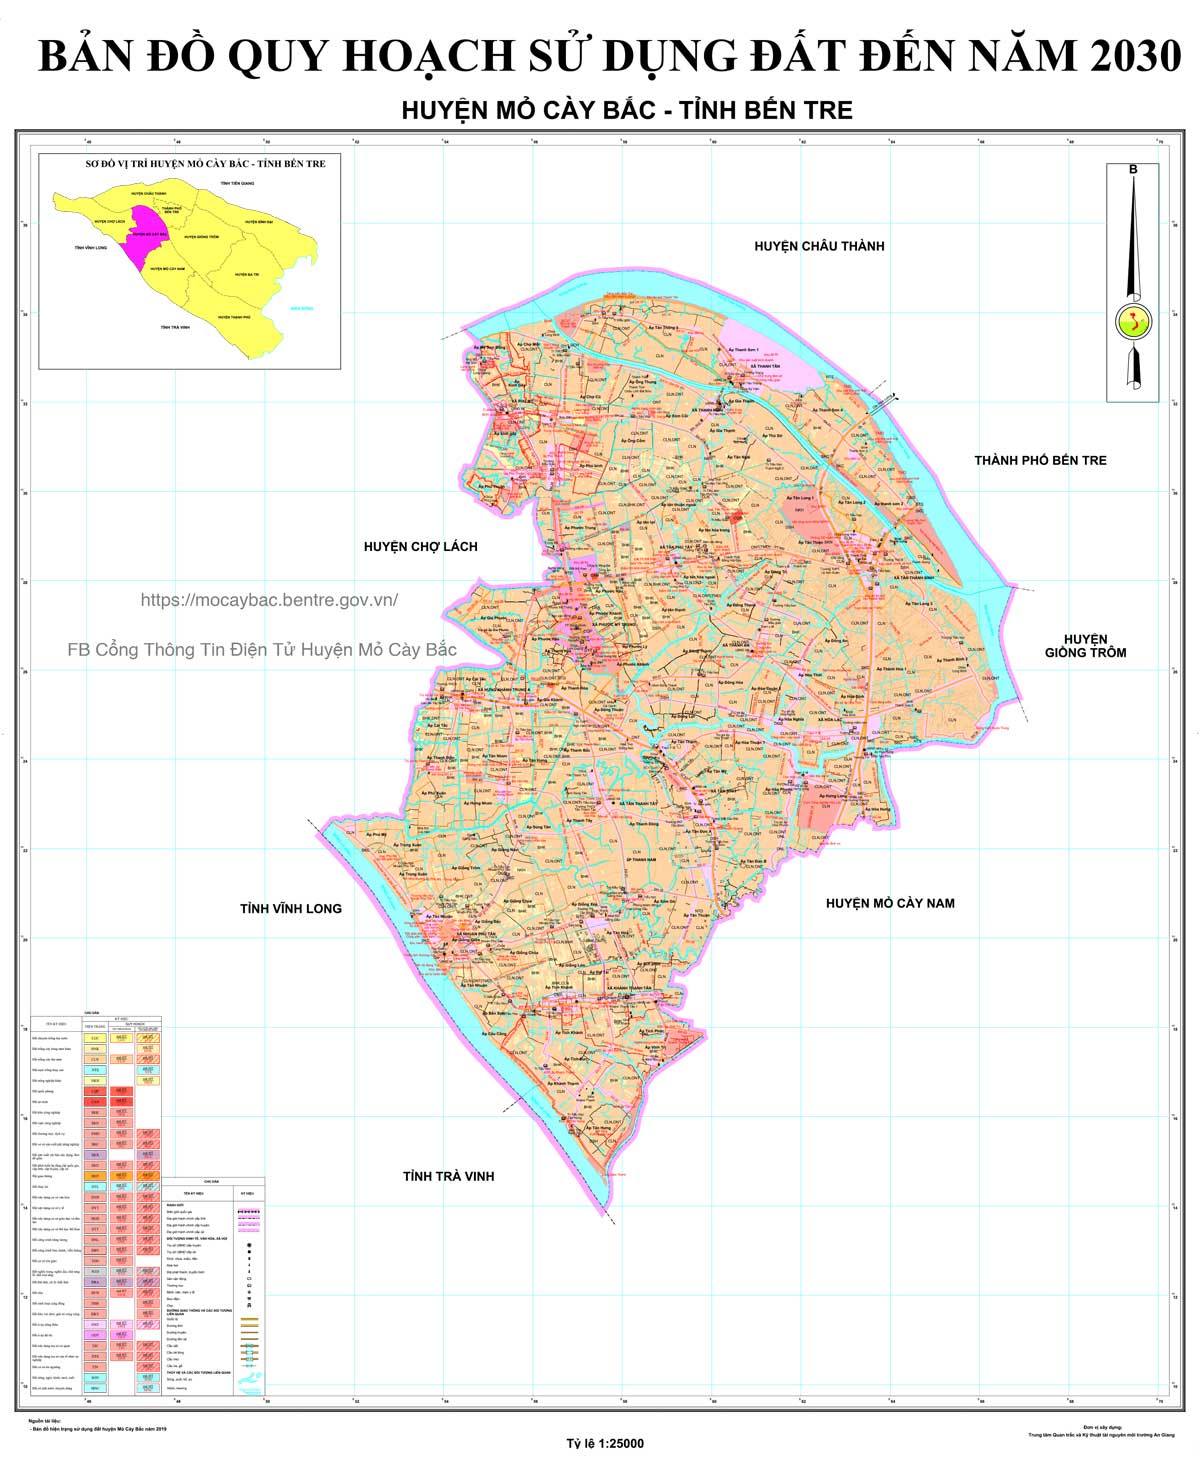 Bản đồ QHSDĐ huyện Mỏ Cày Bắc đến năm 2030